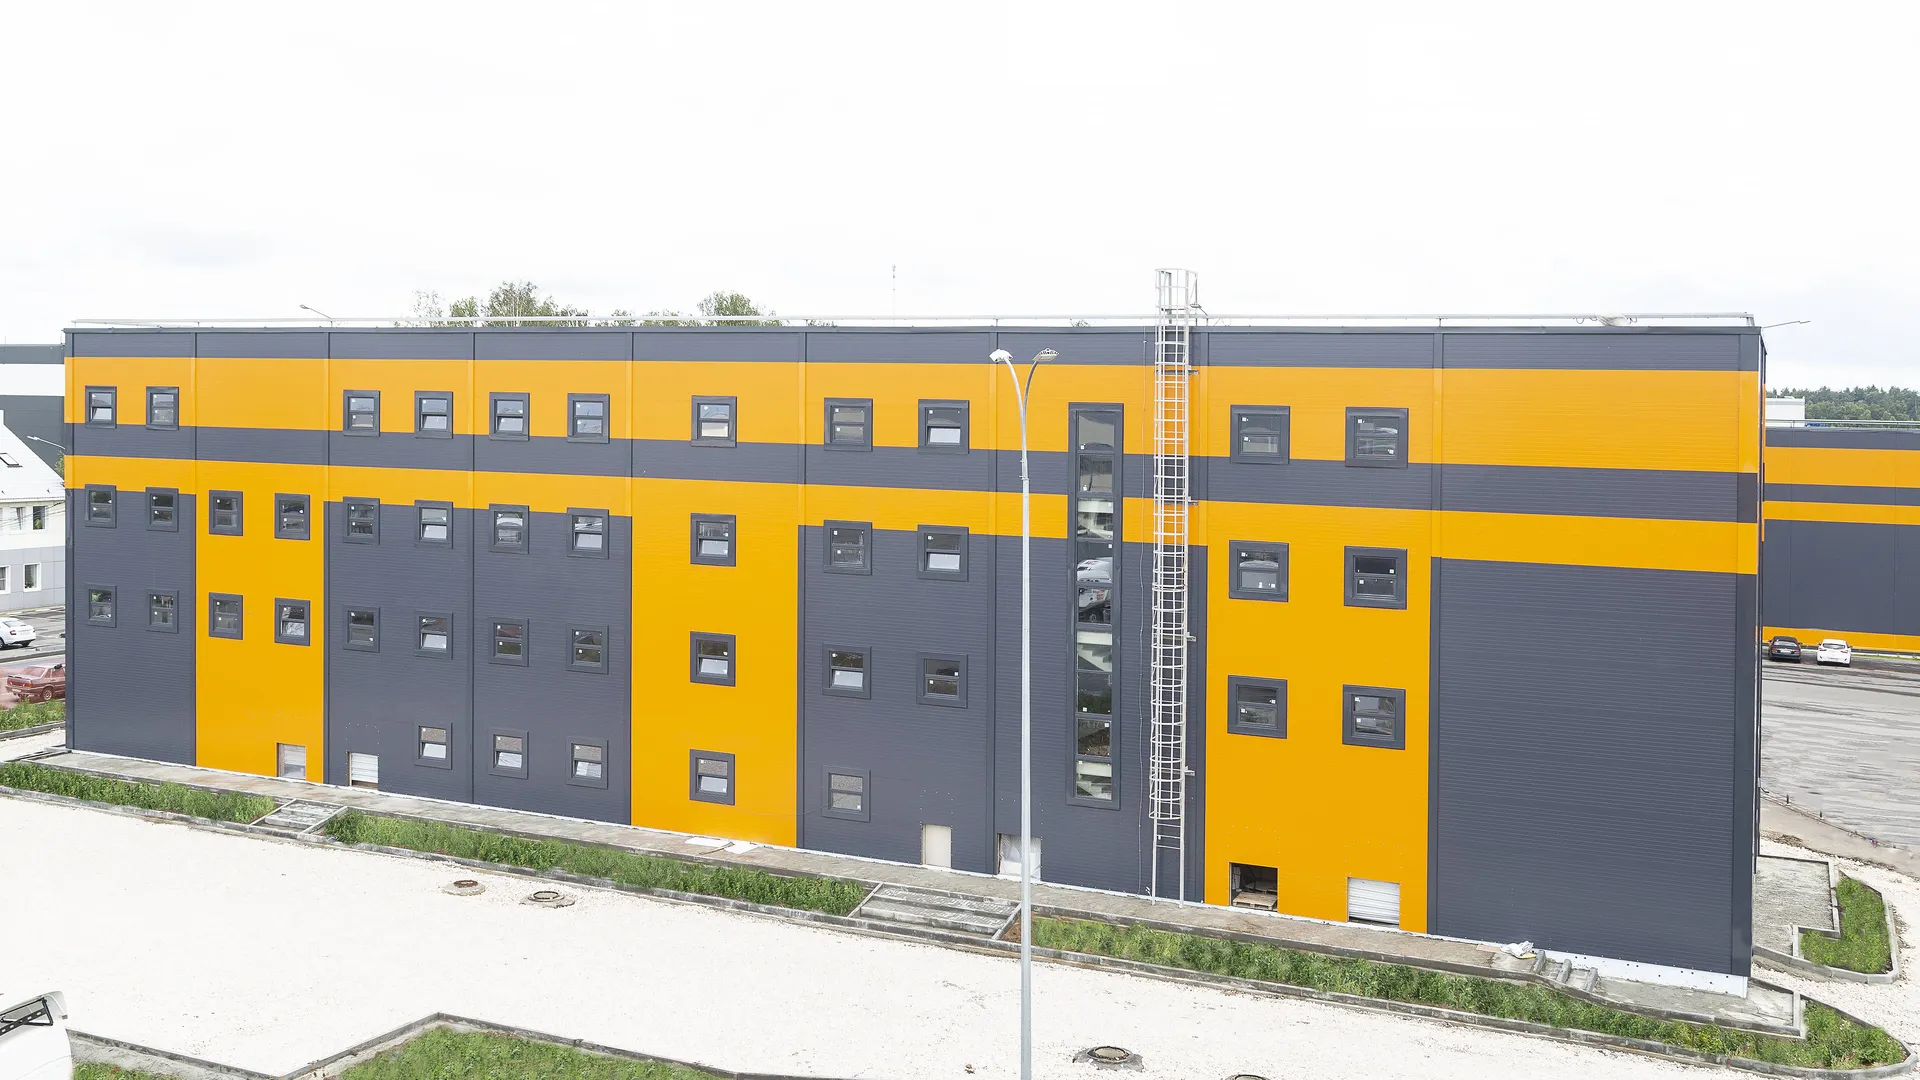 Новый корпус складского комплекса в Богородском округе даст 150 новых рабочих мест. Там создадут офисы и зоны отдыха